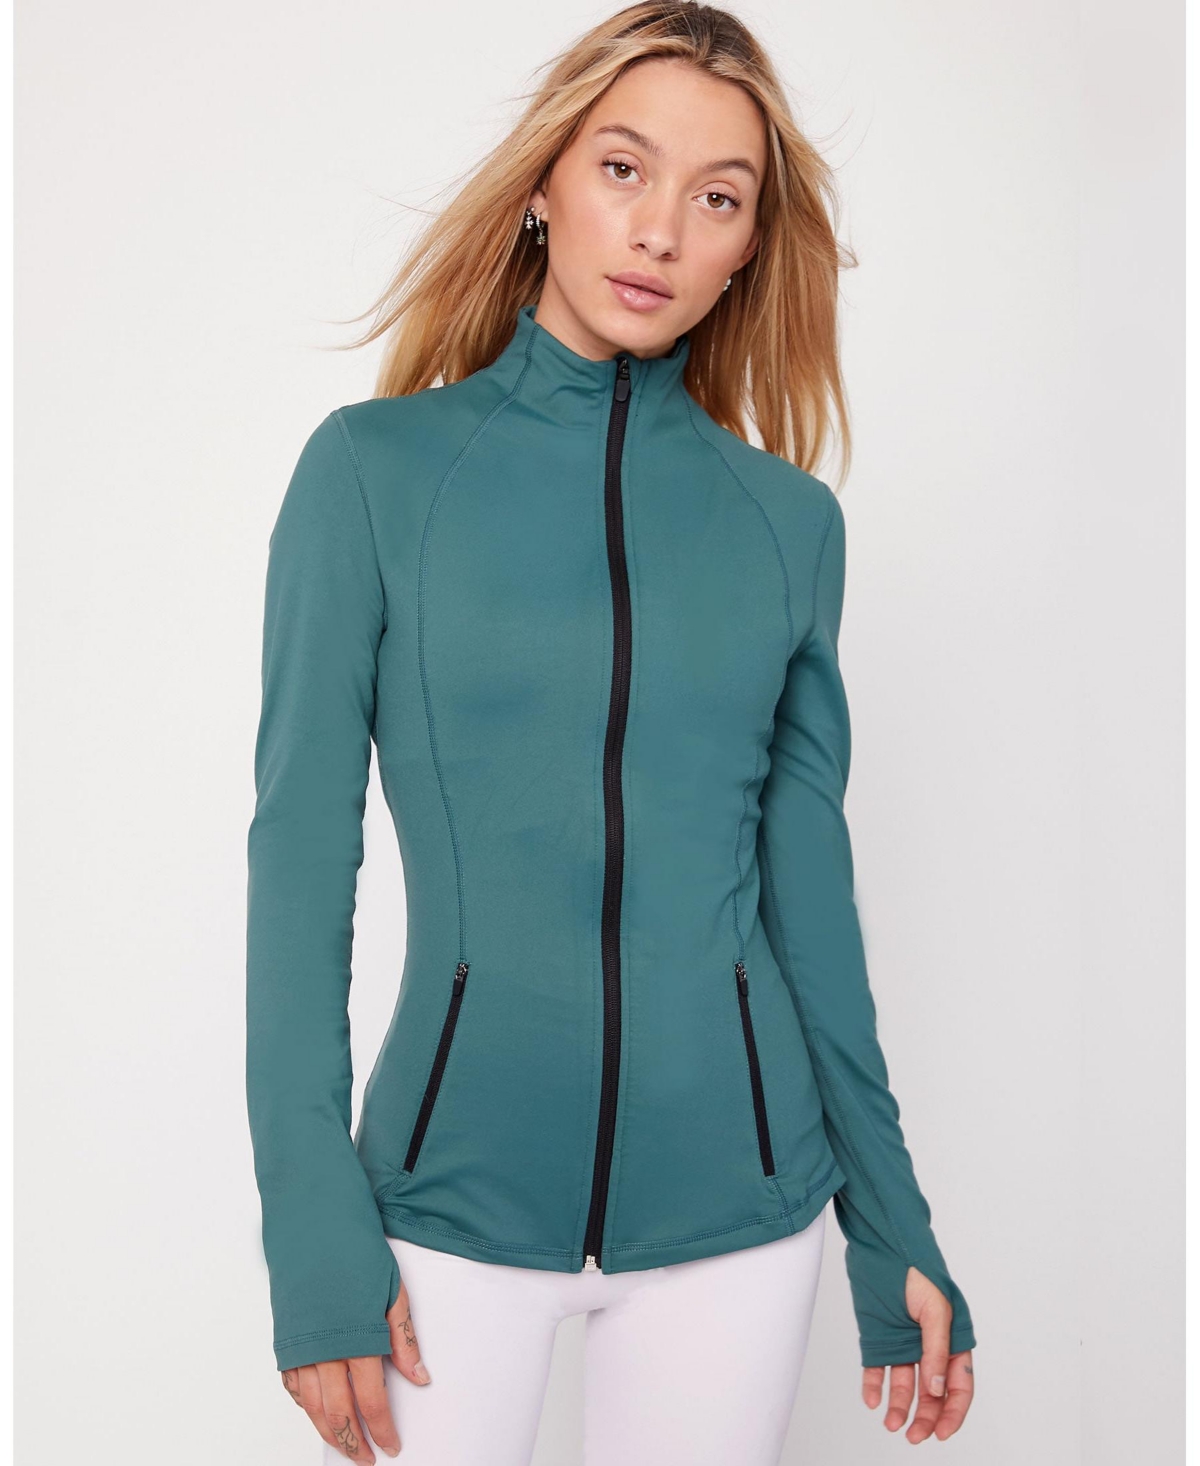 Women's Gen Xyz Zip Up Track Jacket for Women - Mediterranea green